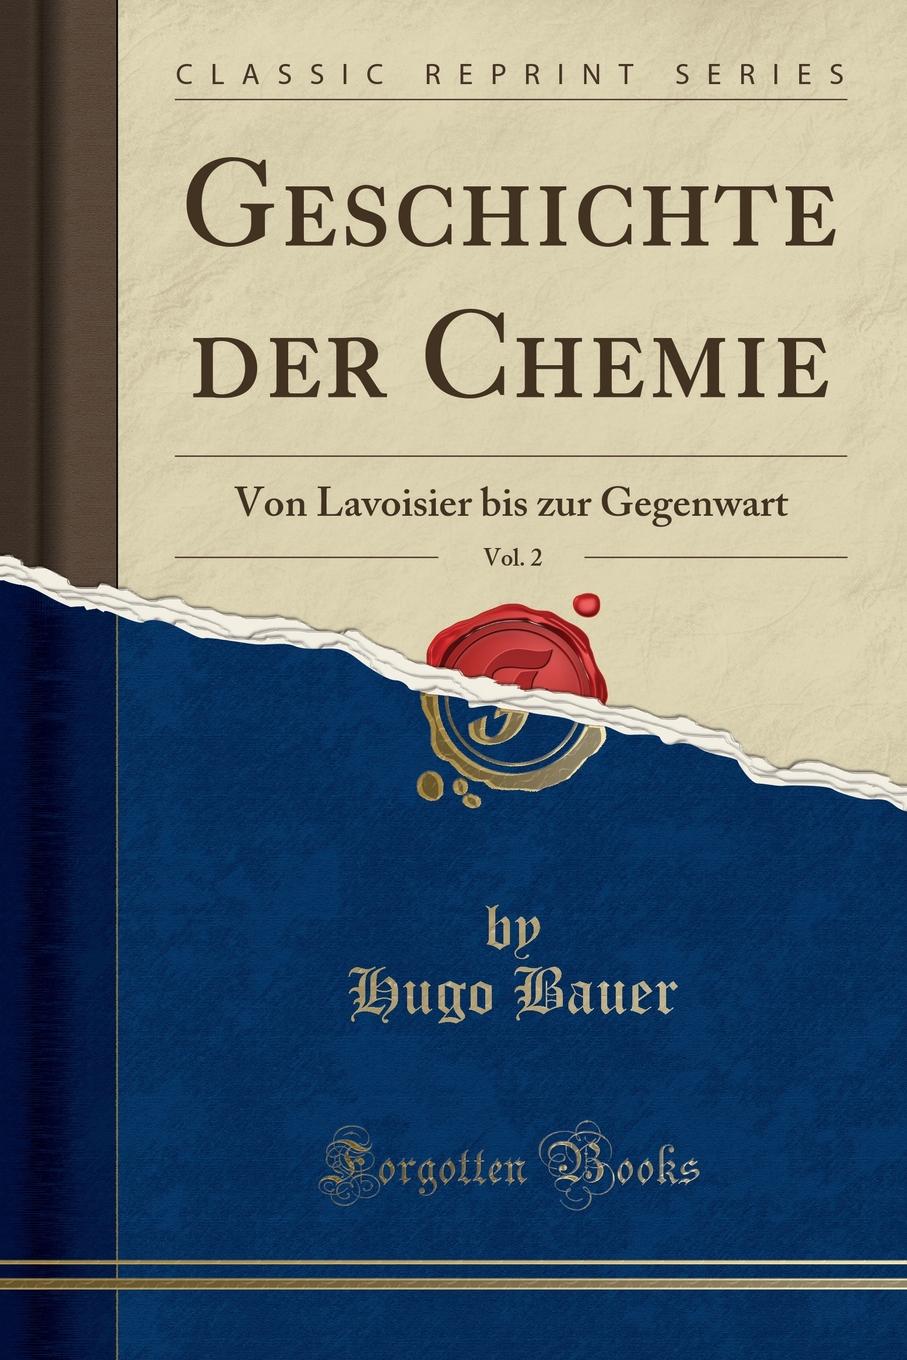 Geschichte der Chemie, Vol. 2. Von Lavoisier bis zur Gegenwart (Classic Reprint)